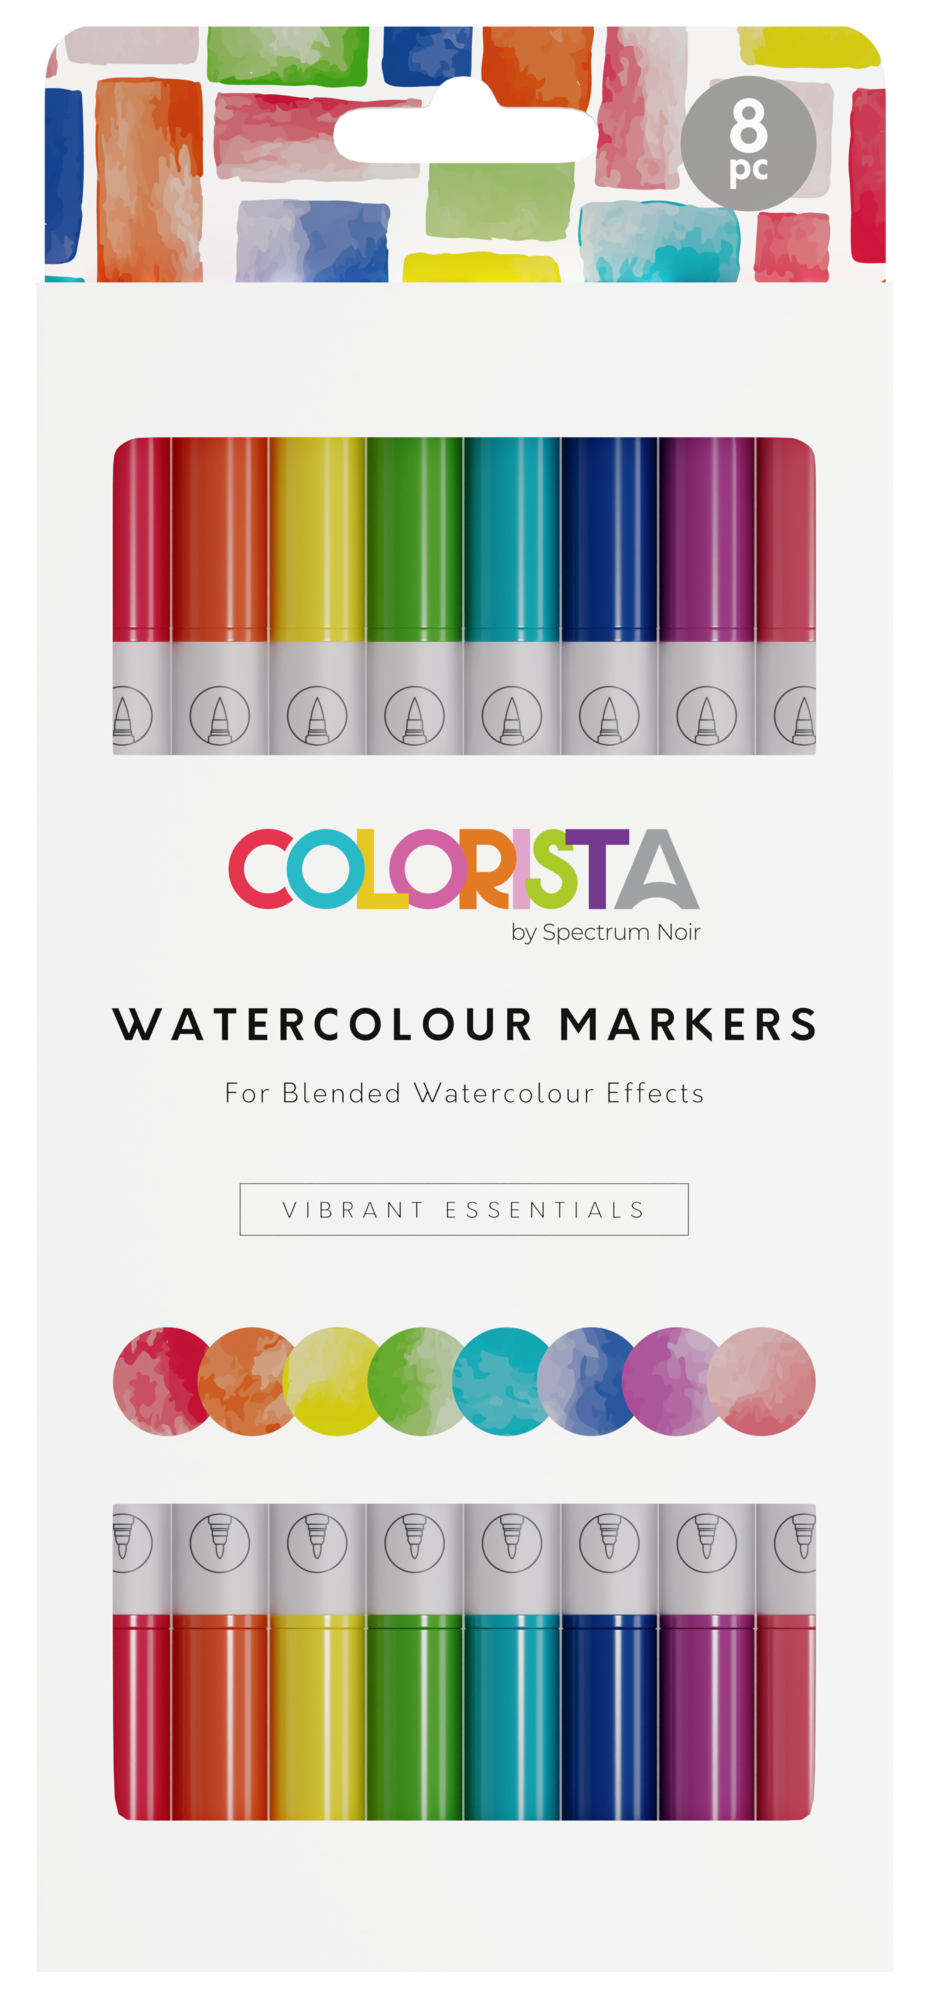 Spectrum Noir - Colorista - Watercolor Markers - Vibrant